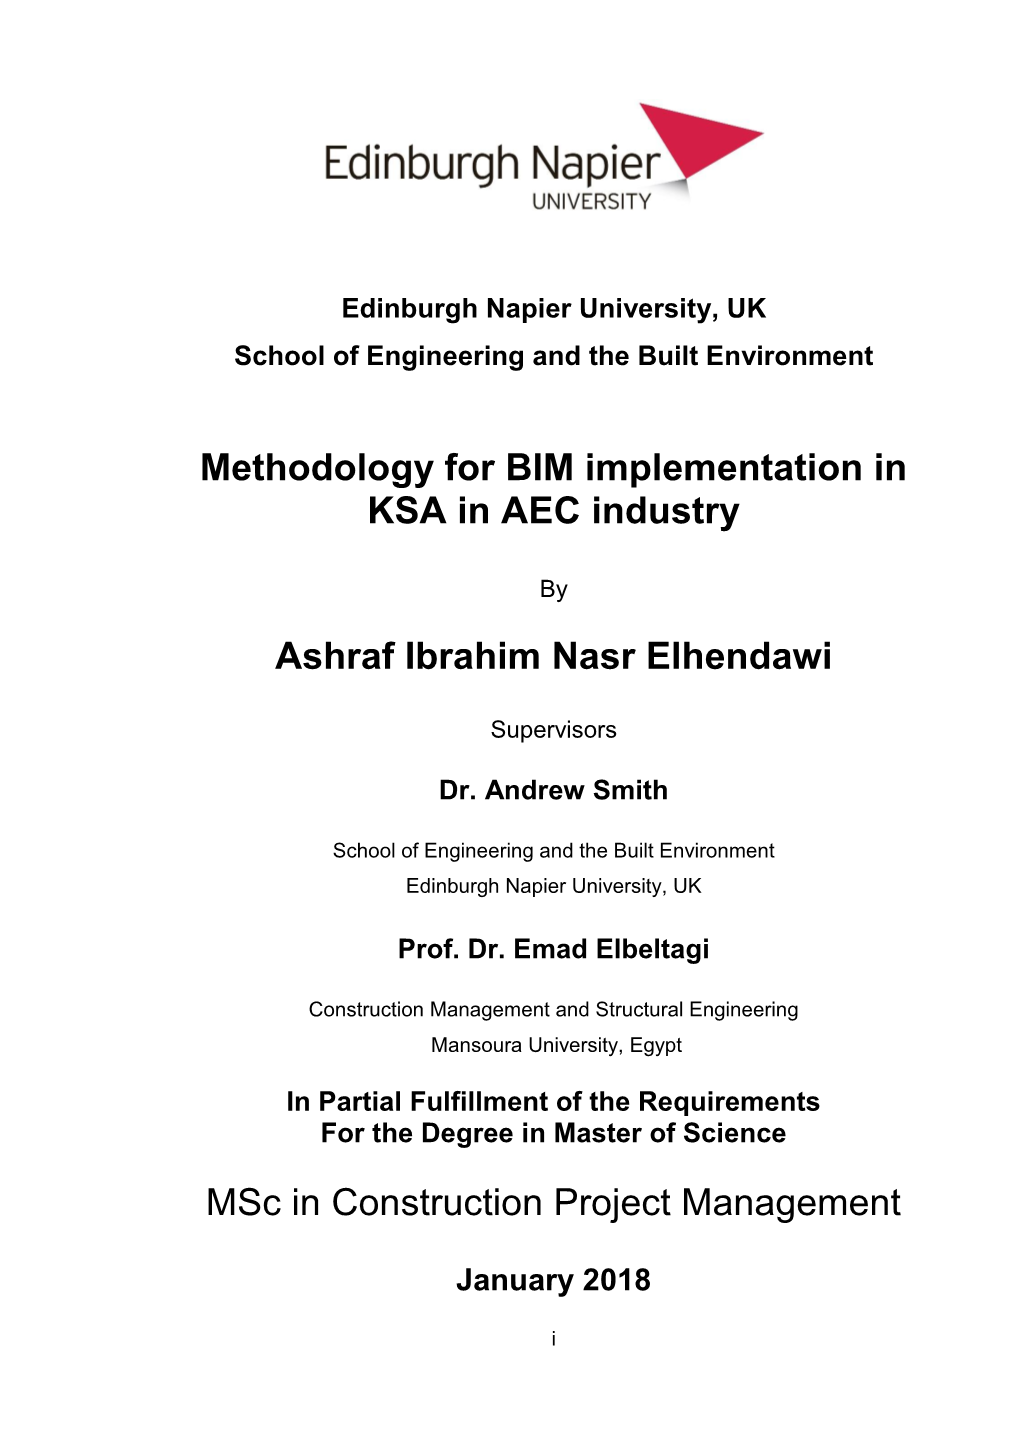 Methodology for BIM Implementation in KSA in AEC Industry